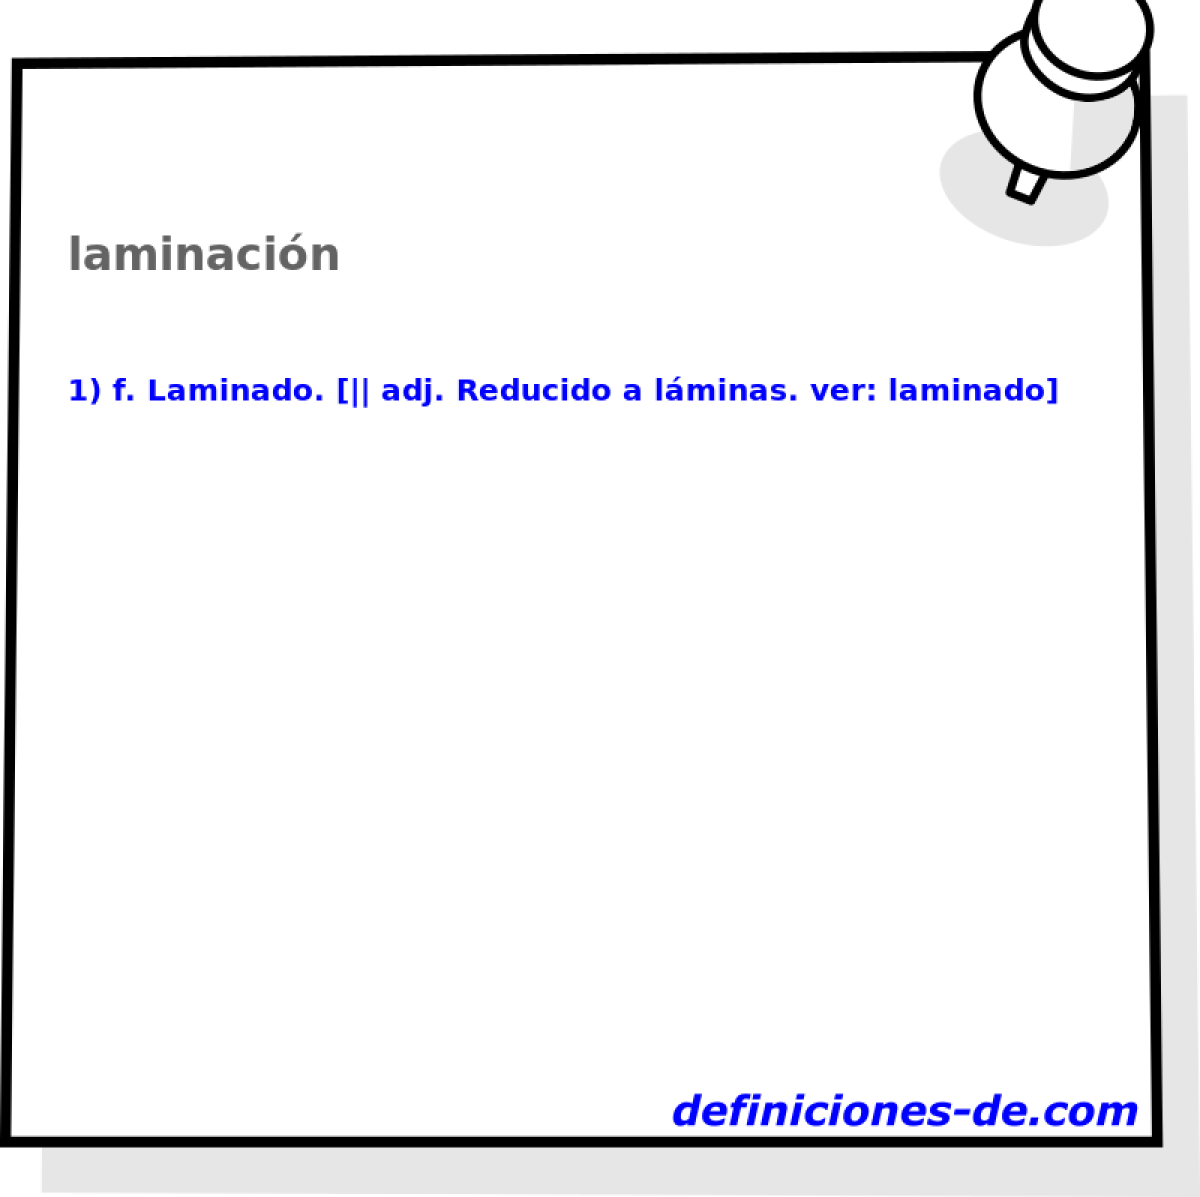 laminacin 